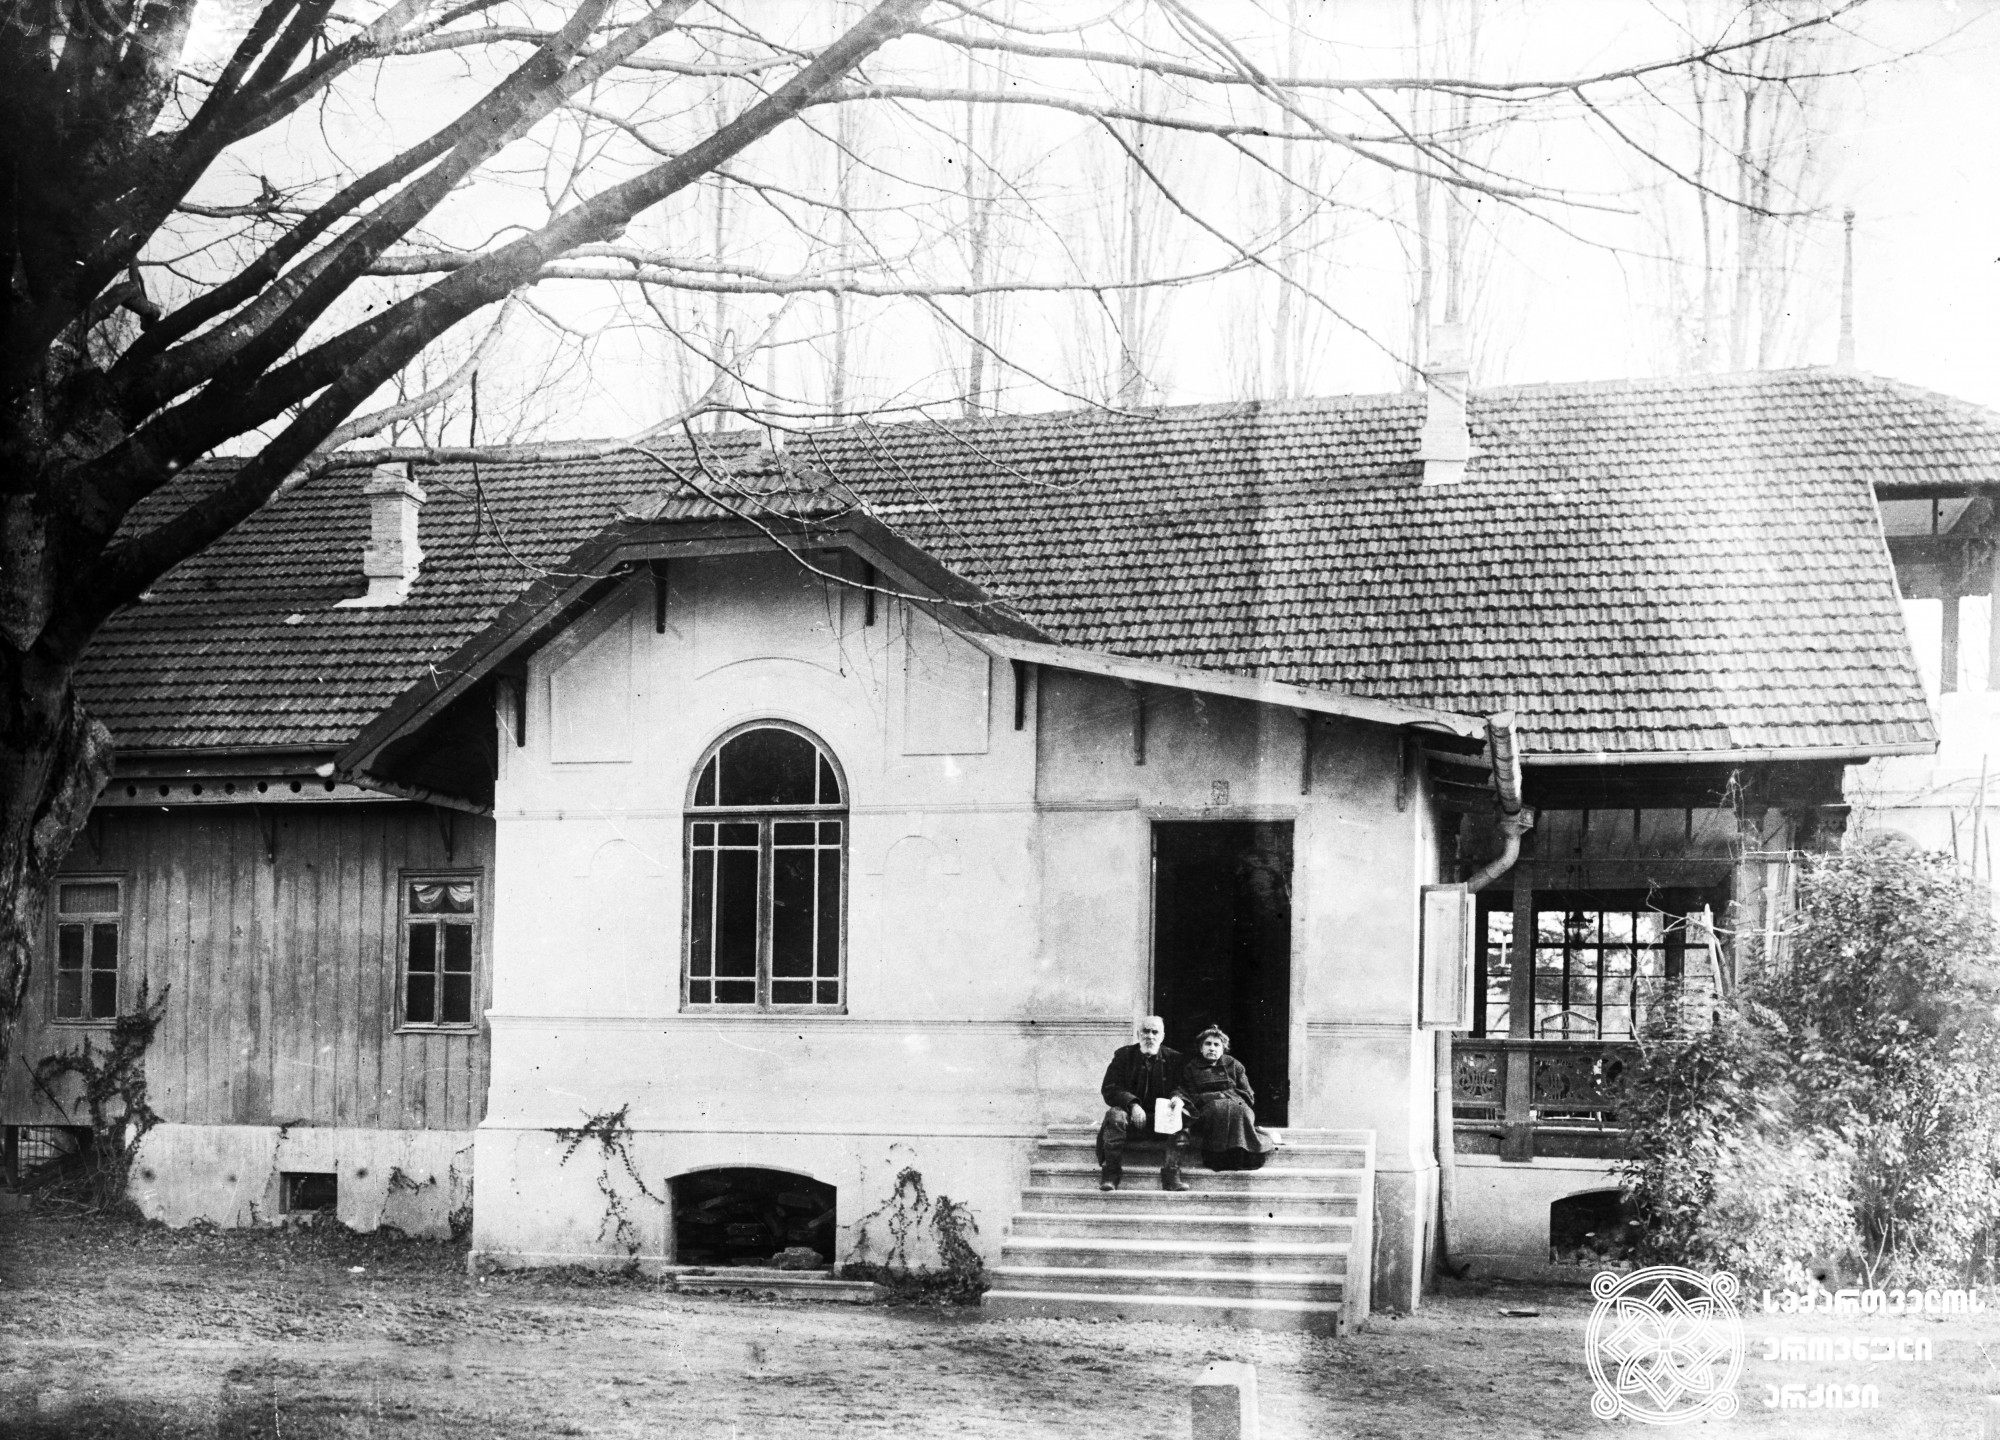 ნიკო ნიკოლაძე და ოლღა გურამიშვილი-ნიკოლაძისა დიდ ჯიხაიშში, საკუთარი სახლის წინ. <br>
1917 წელი. <br>
ნიკოლაზე-ღამბაშიძის ფოტოკოლექცია.